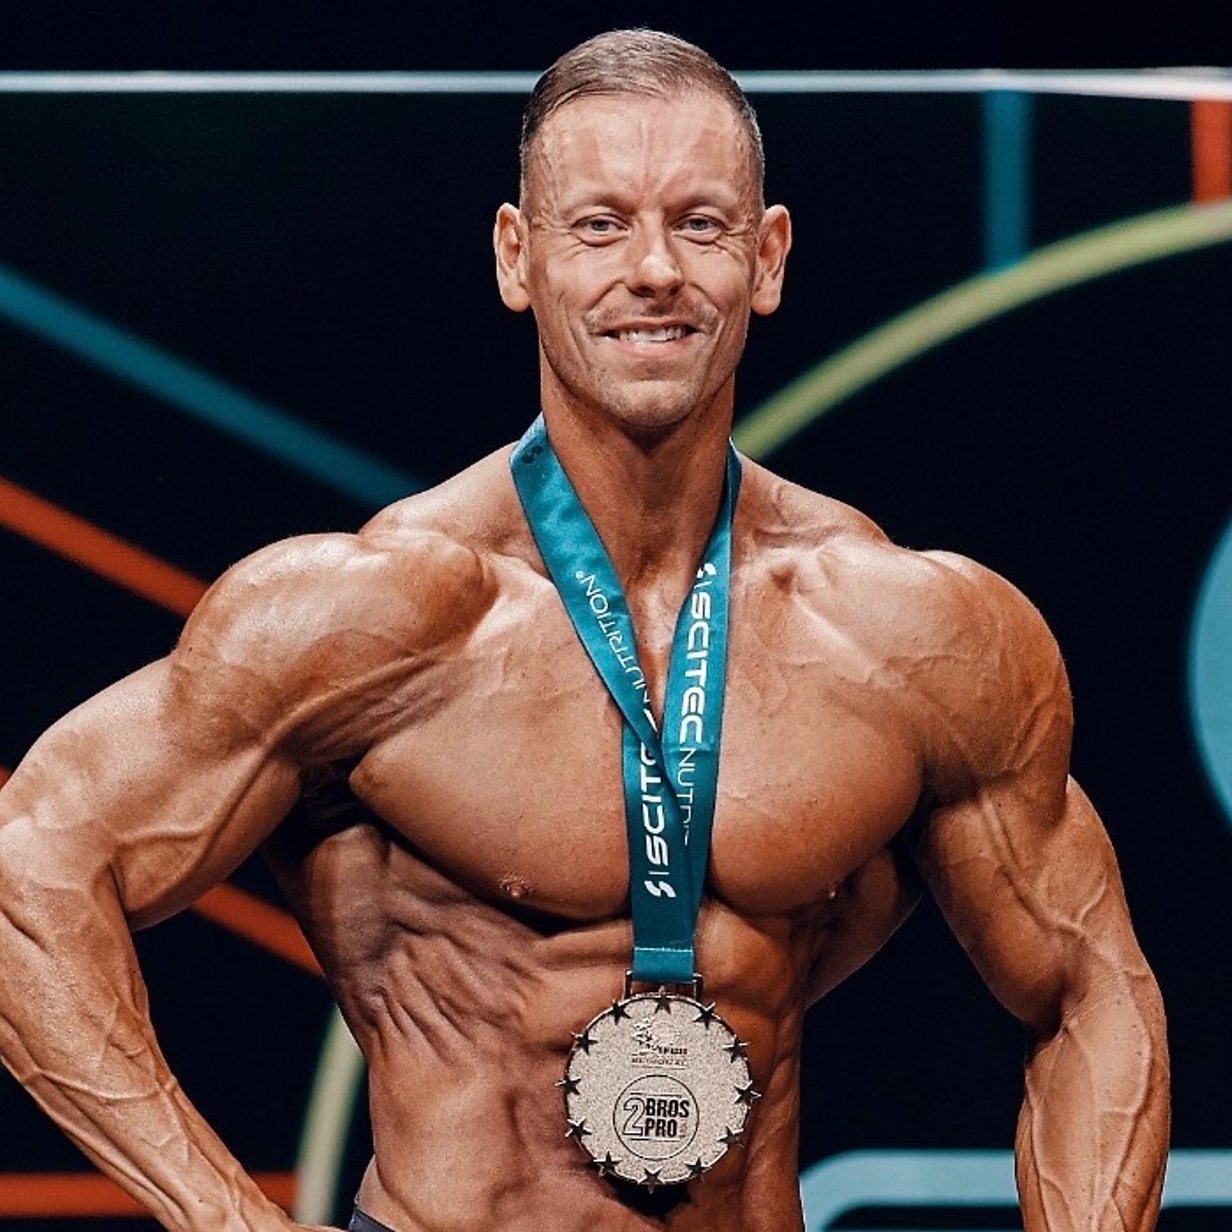 Bodybuilder with three kidneys wins Euro title - BBC News